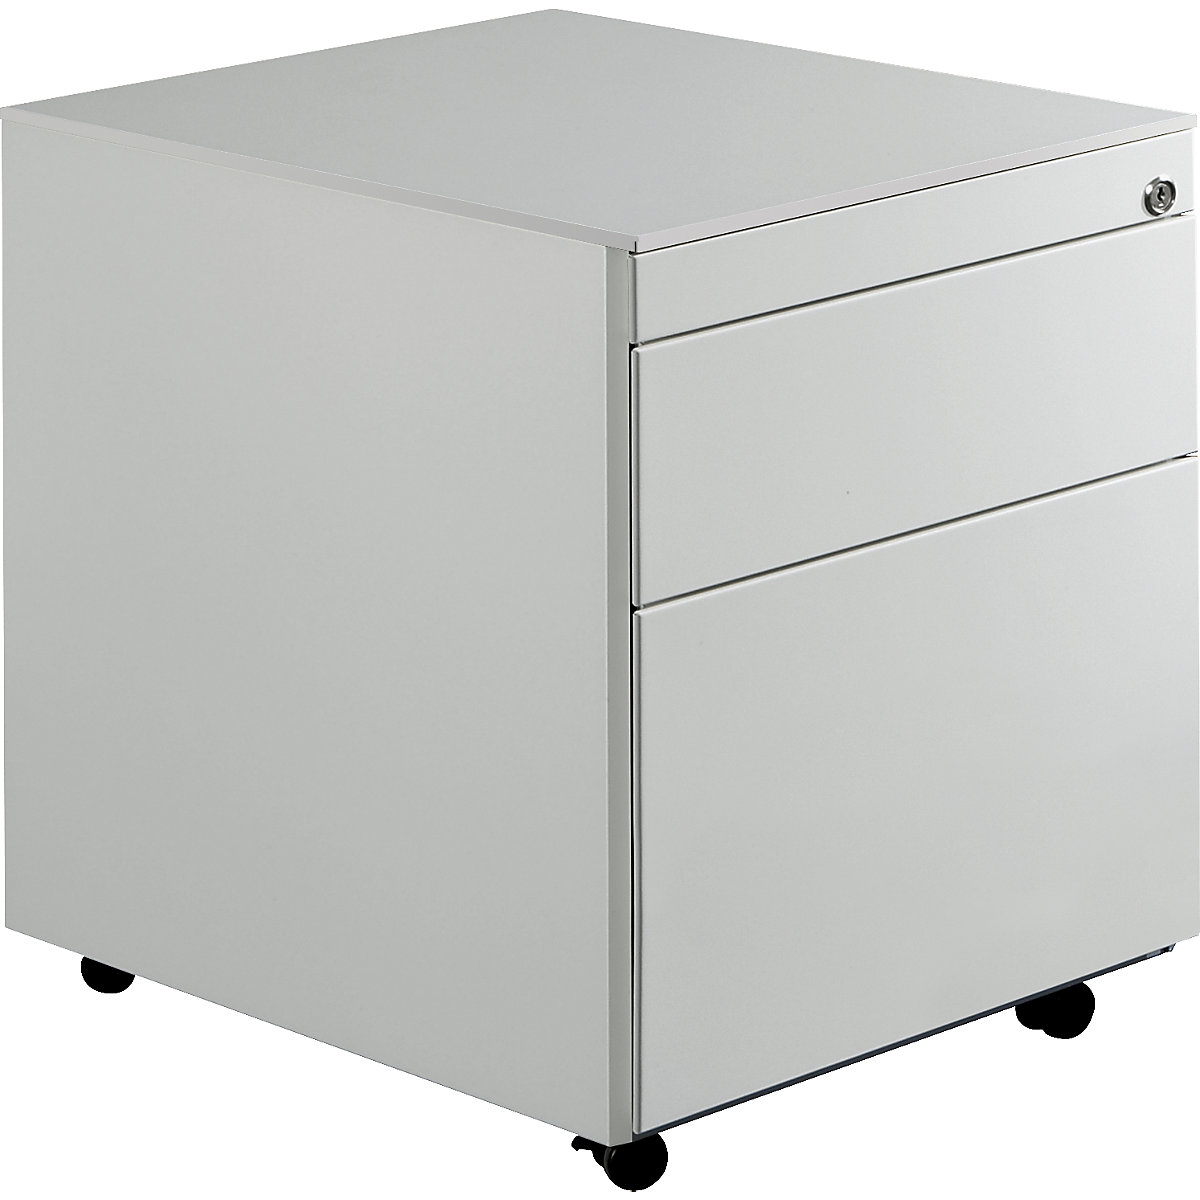 Drawer pedestal with castors – mauser, HxD 570 x 600 mm, 1 drawer, 1 suspension file drawer, light grey / light grey / light grey-11